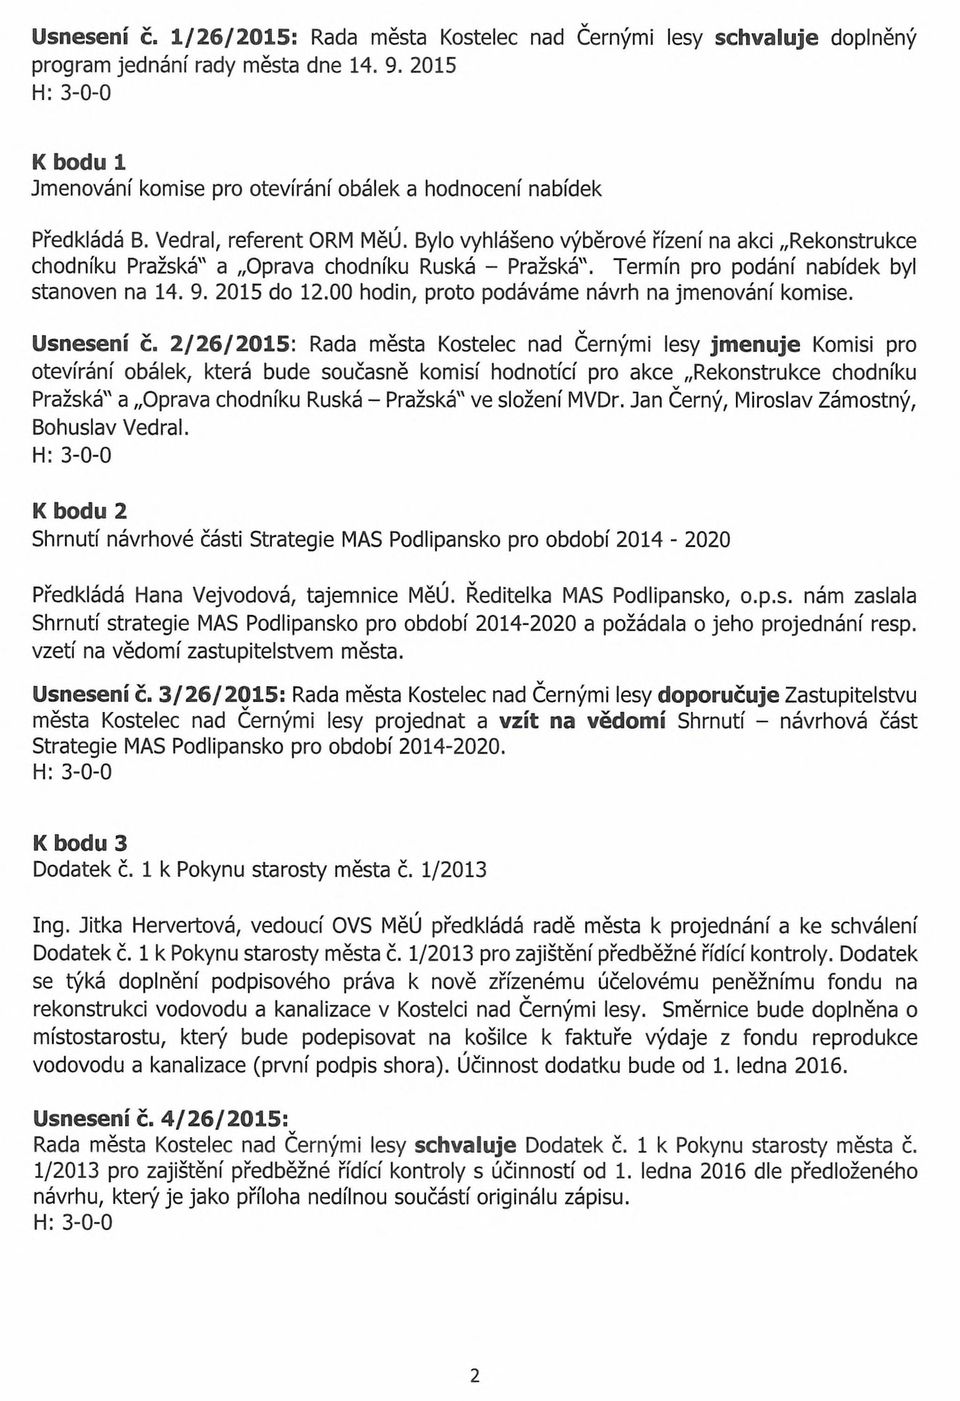 Bylo vyhlášeno výběrové řízení na akci Rekonstrukce chodníku Pražská" a Oprava chodníku Ruská - Pražská". Termín pro podání nabídek byl stanoven na 14. 9. 2015 do 12.